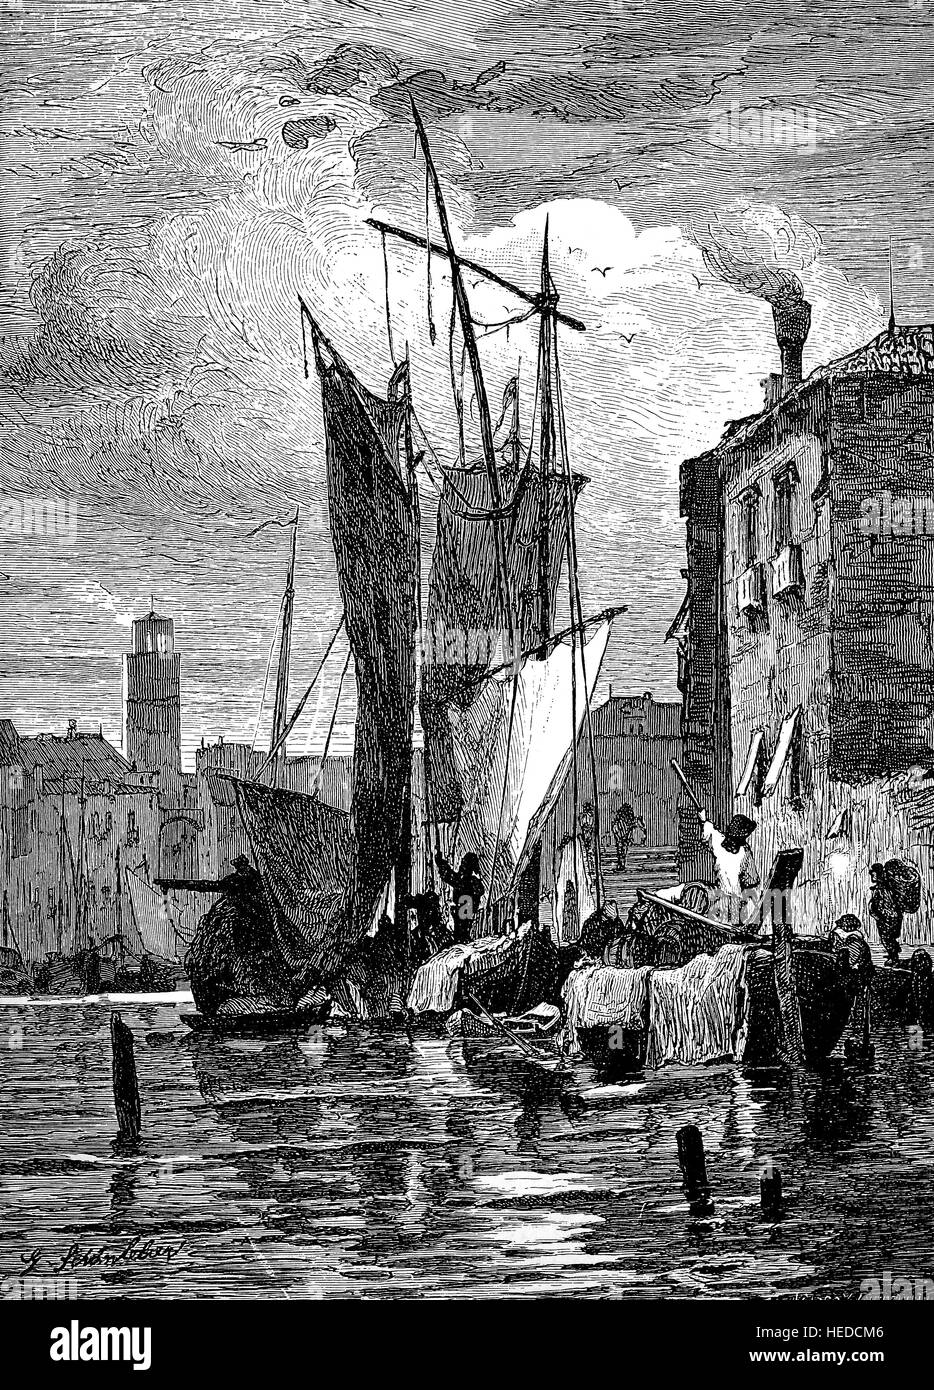 Presso l'isola della Giudecca nella Laguna veneziana, Italia, Porto scene, da una xilografia di 1880, digitale migliorata Foto Stock